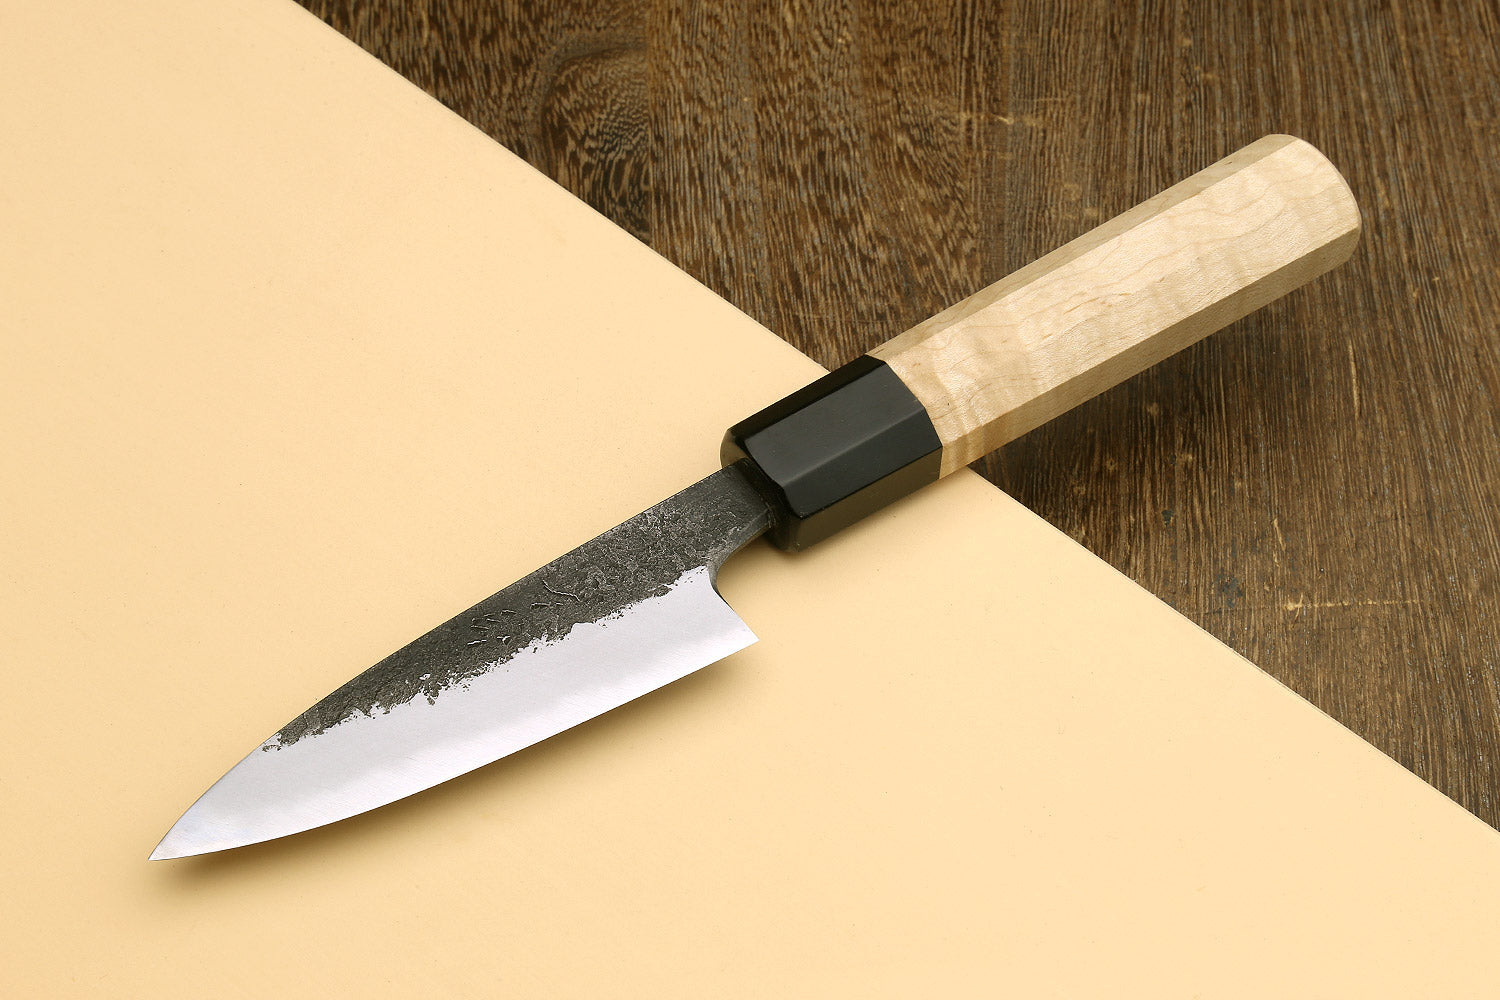 Japanese Kitchen Paring Knife 3.9 Peeling fruit or removing seeds SEK – jp- knives.com